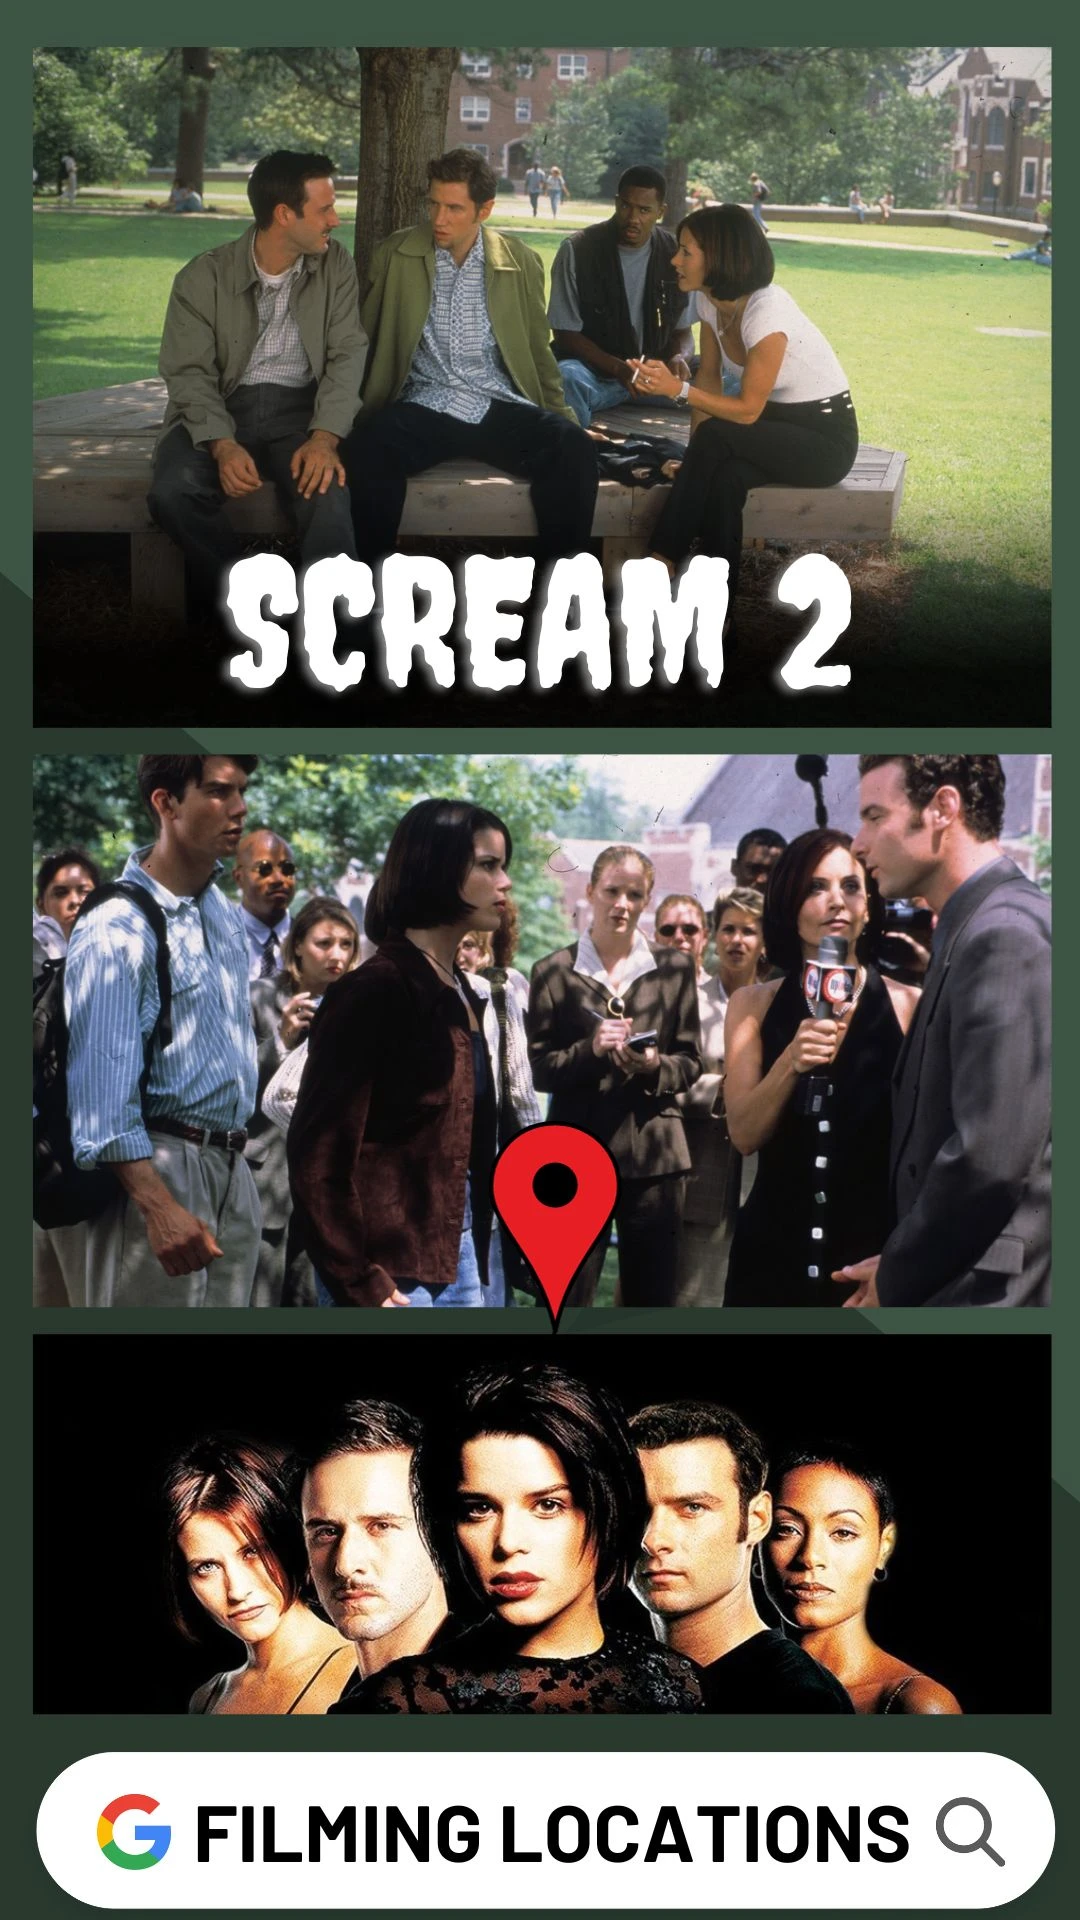 Scream 2 Filming Locations